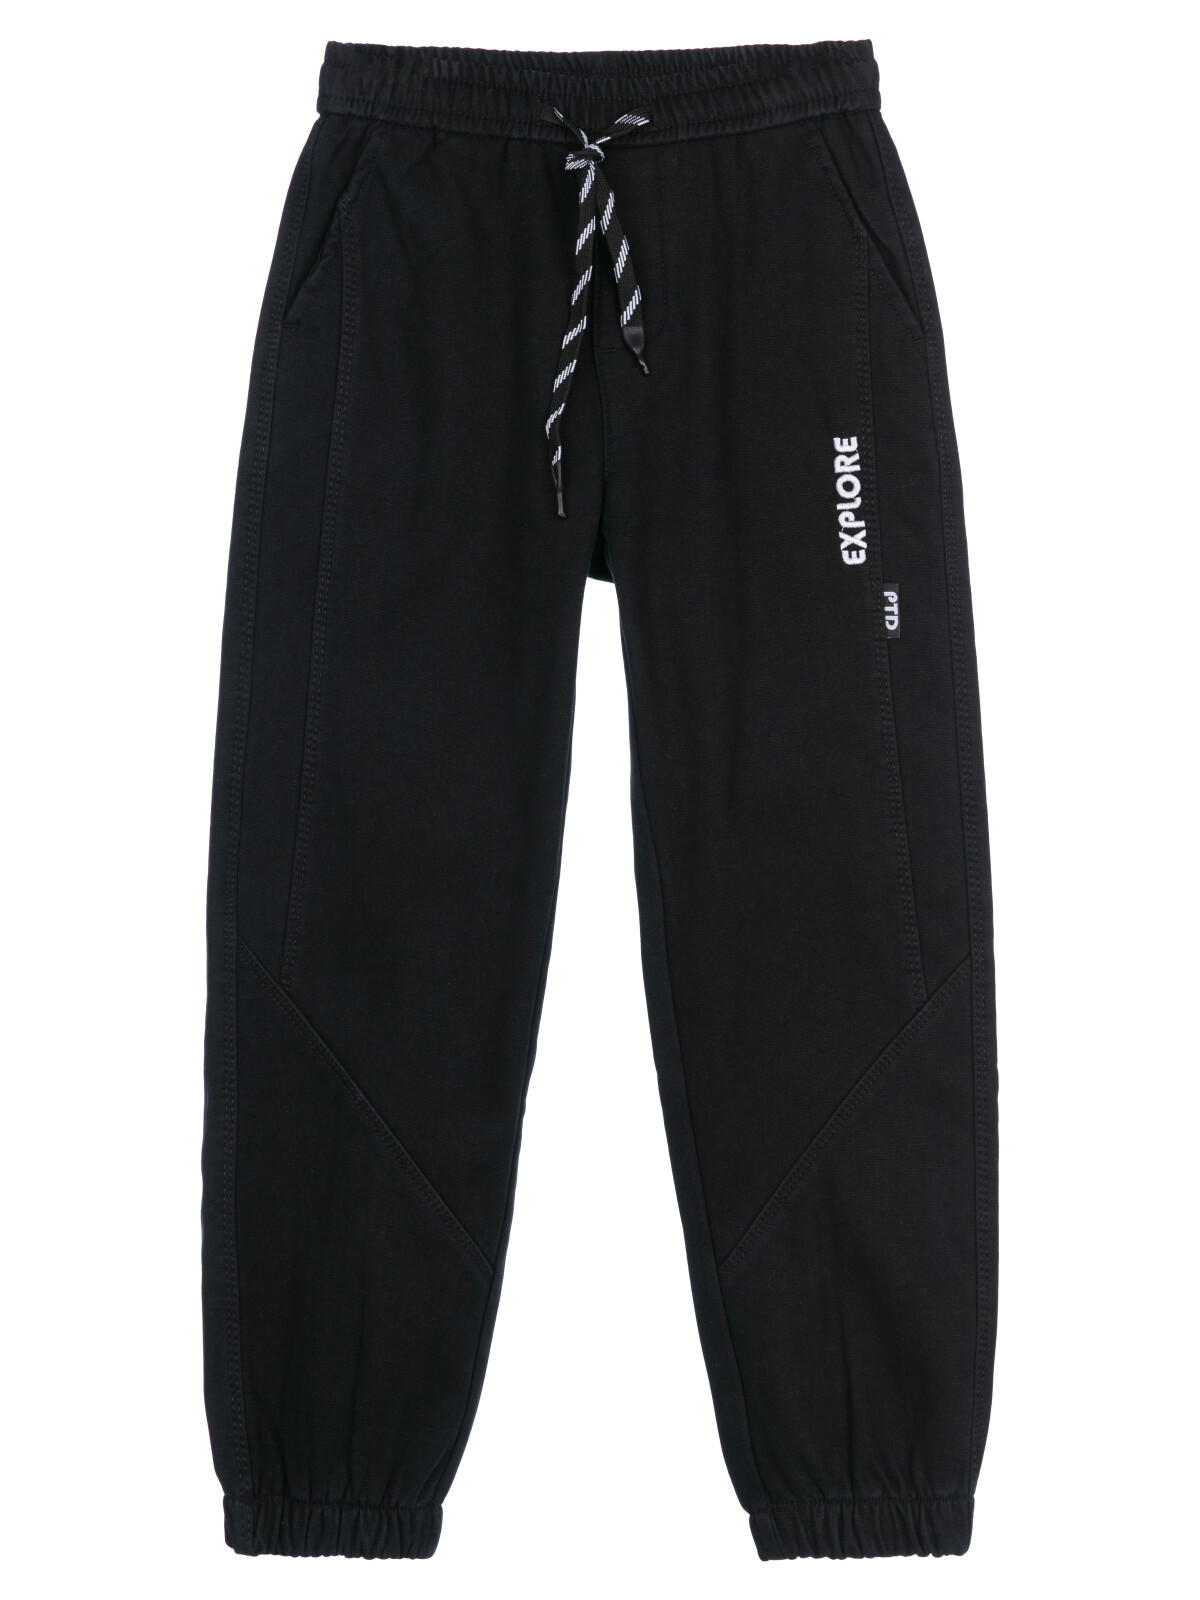 Брюки текстильные джинсовые утепленные флисом для мальчиков PlayToday, черный, 164